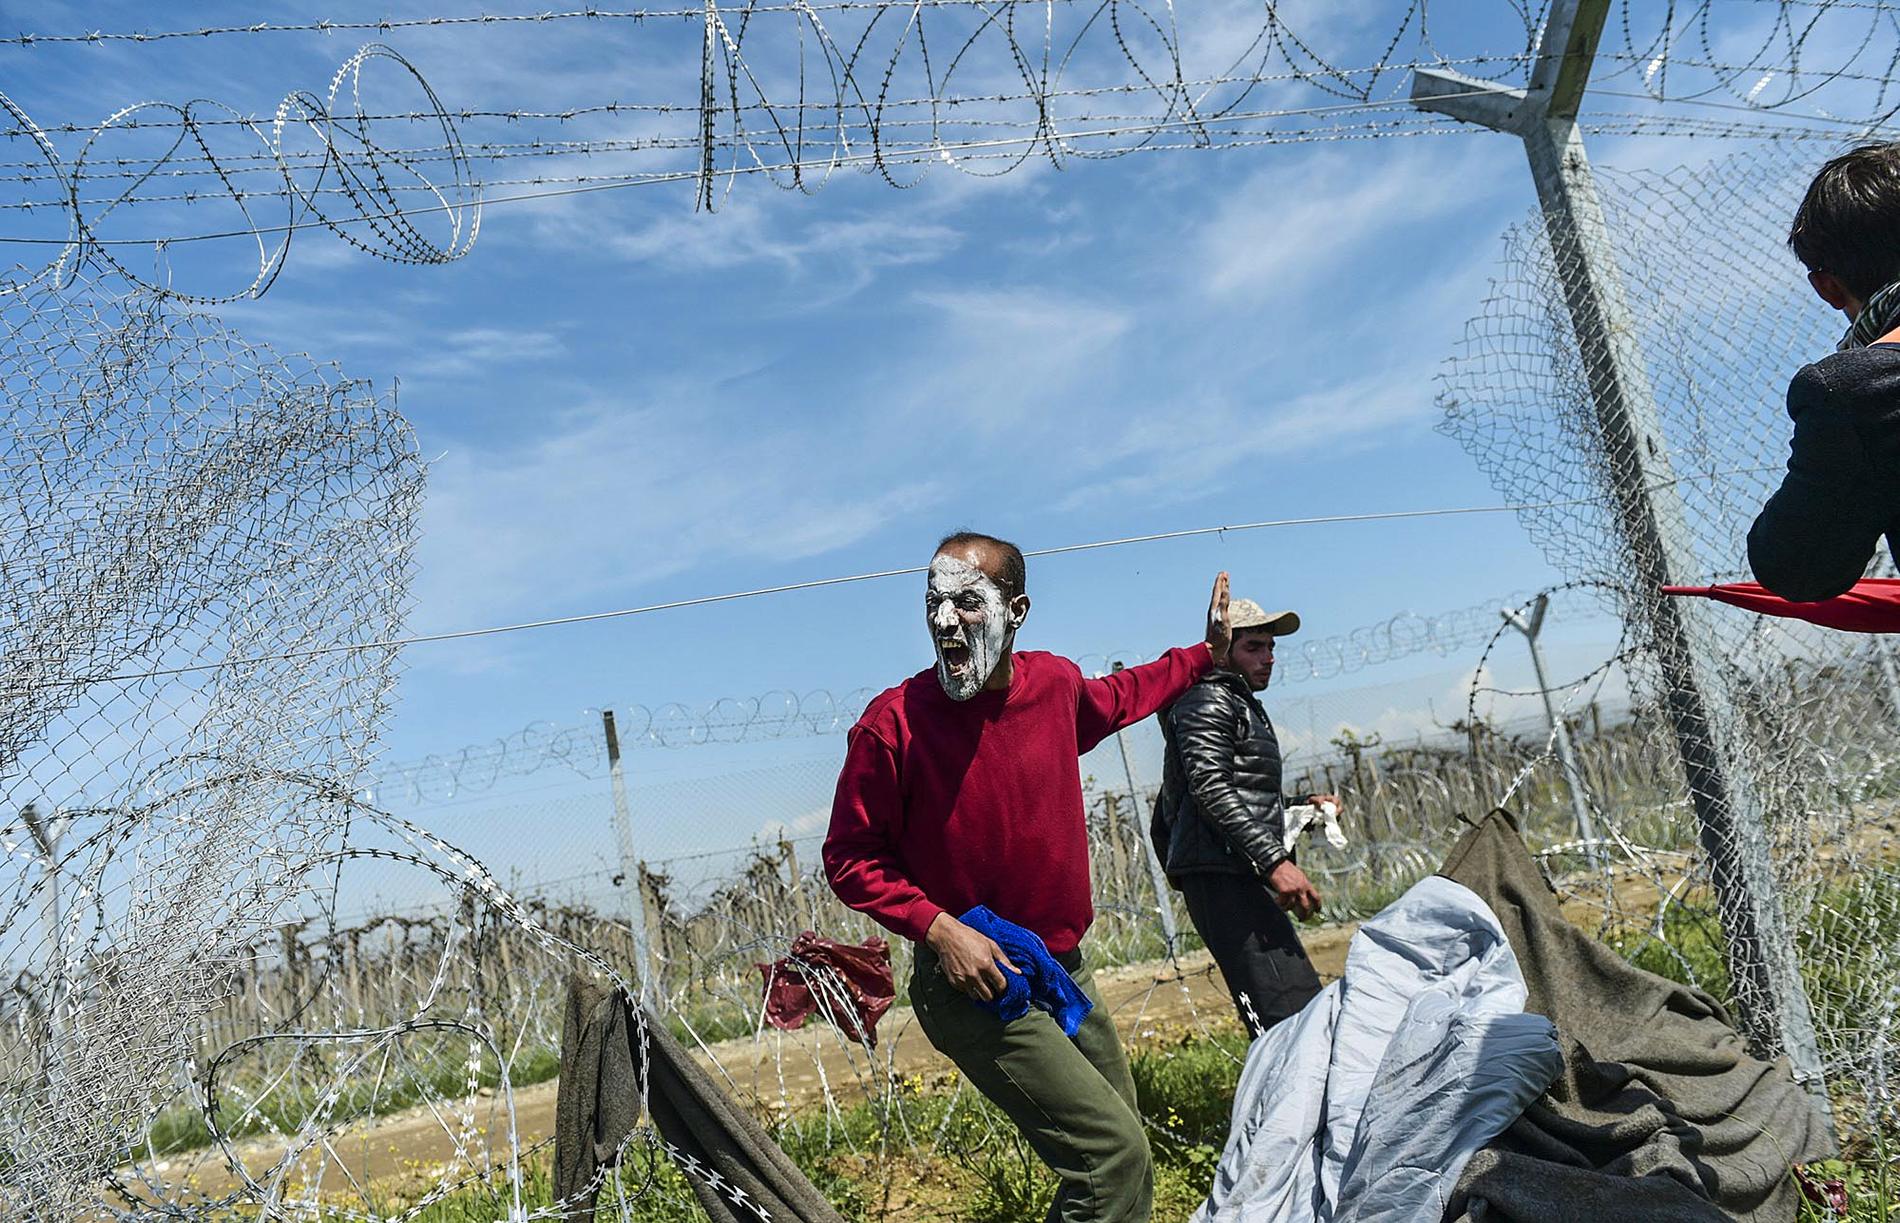 Hundratals migranter skadades på söndagen när de besköts med tårgas vid gränsen mellan Makedonien och Grekland. Den Makedonska polisen sköt mot  flyktingar på den grekiska sidan av gränsen vid övergången Idomeni. Människorna smörjde in sig med tandkräm för att skydda sig mot tårgasen.